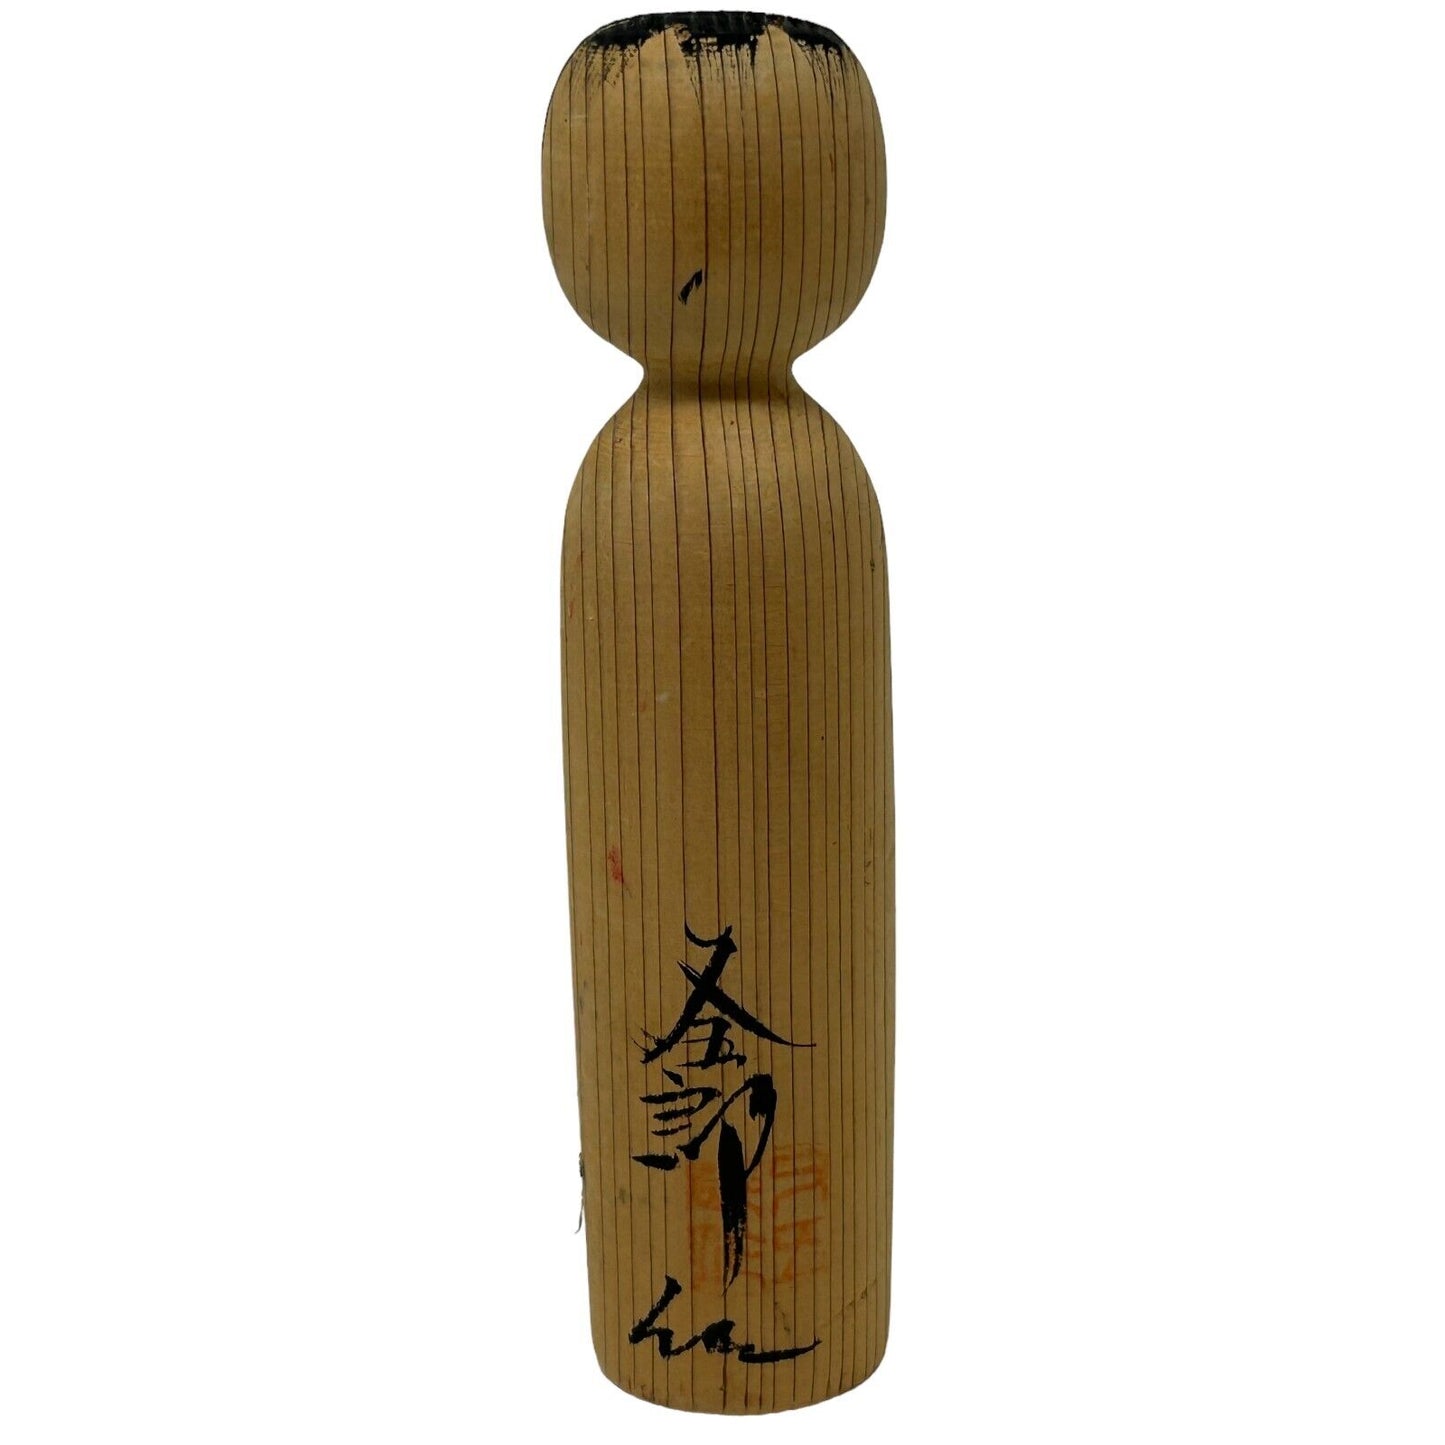 Vintage Japanese Wooden Yashima Matagoro Style Kokeshi Doll Art Handmade Signed